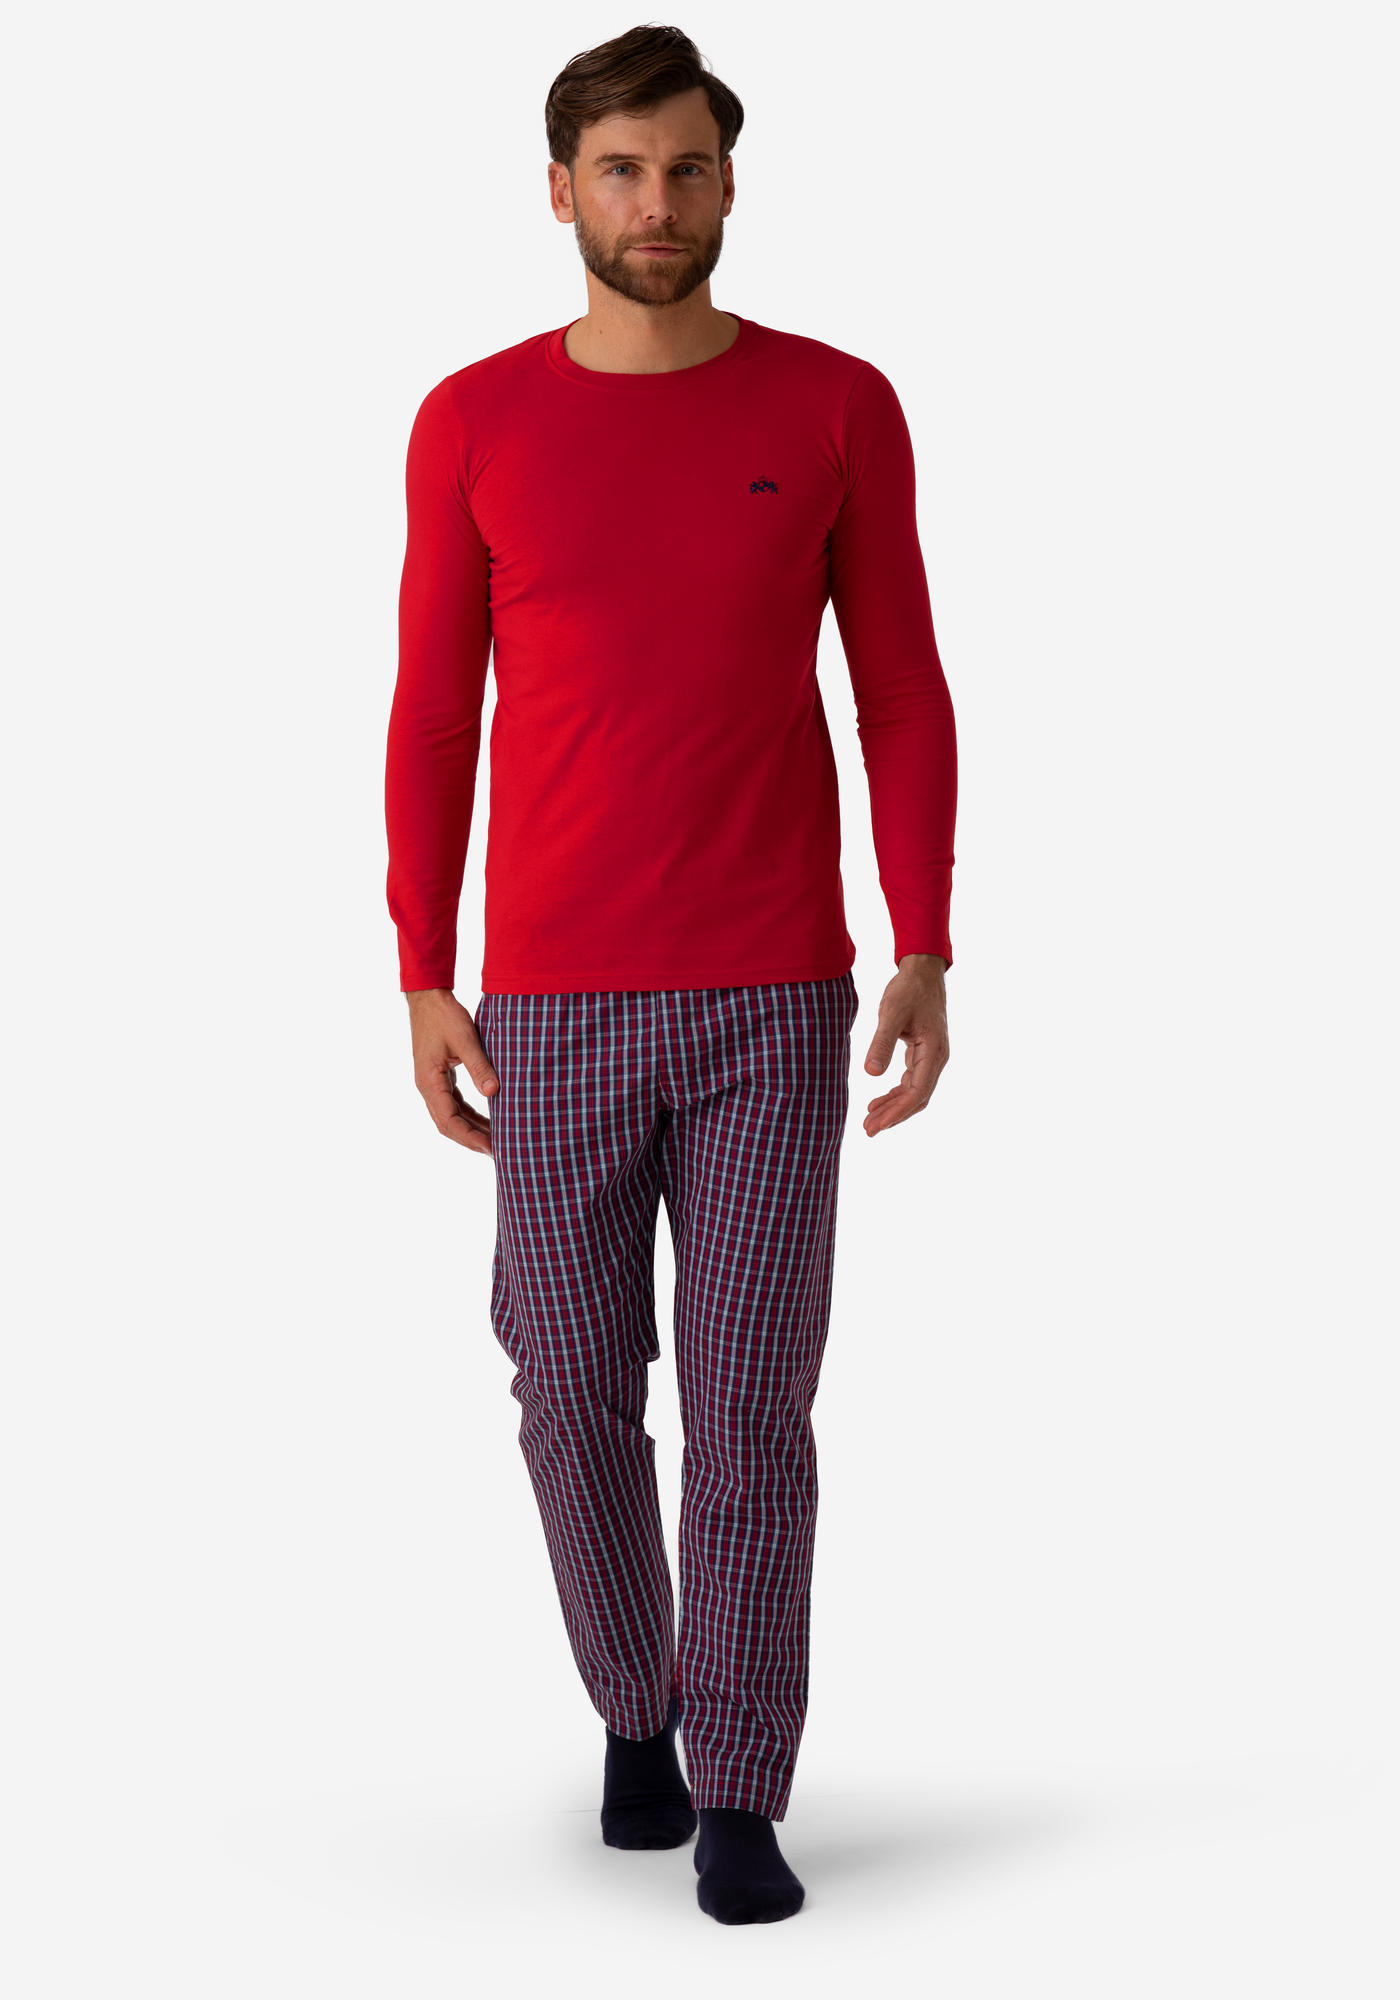 Vivid Red Cotton Pyjama